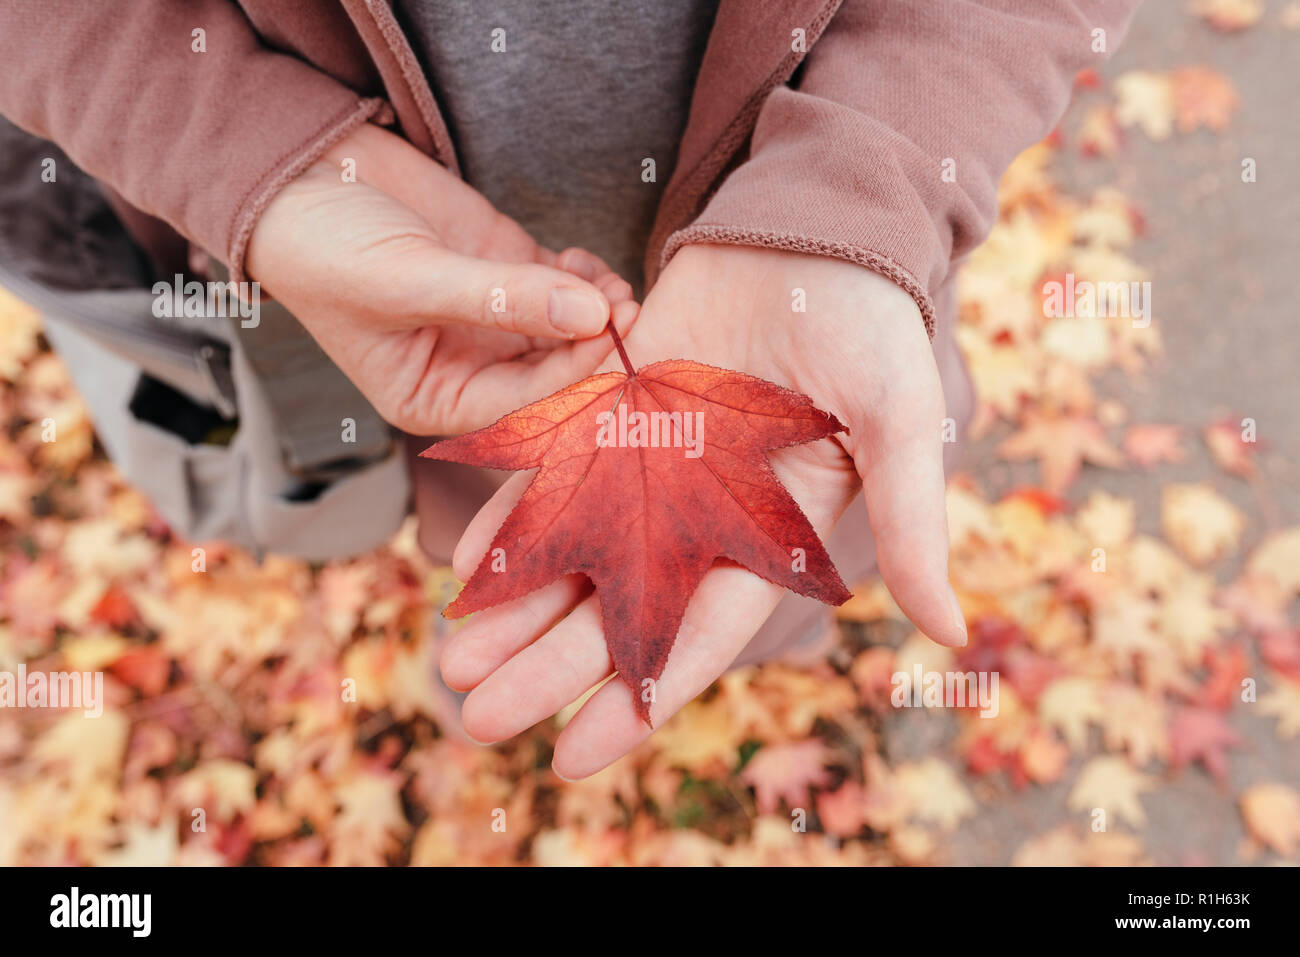 Feuille d'érable japonais coloré dans la main, symbole du changement de la saison Banque D'Images